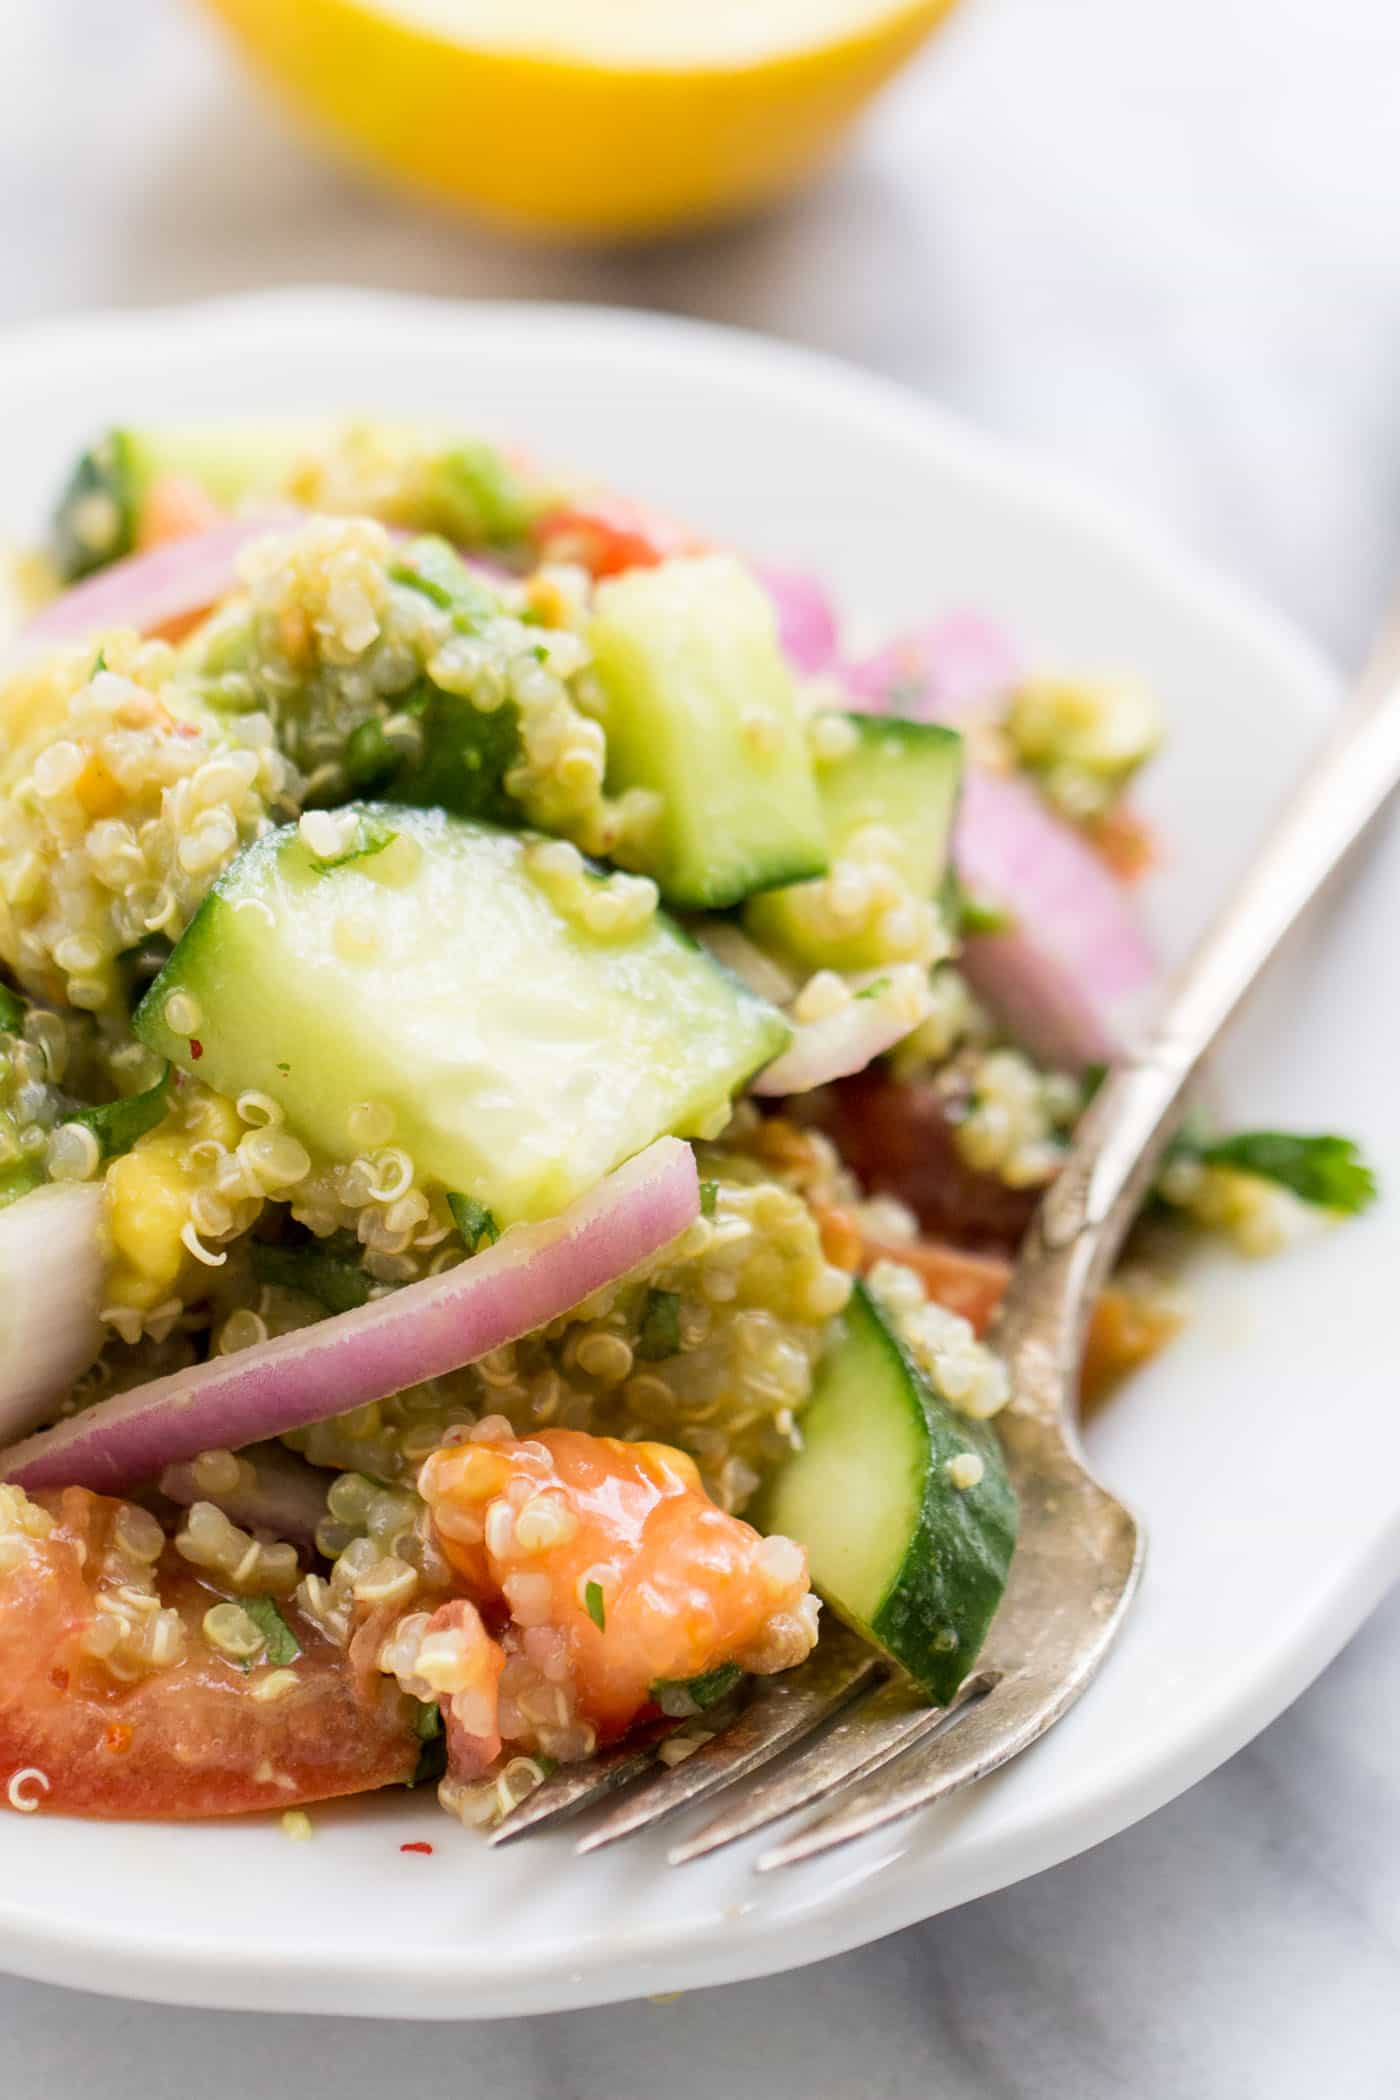  Salade de Quinoa à l'avocat avec Tomates + Concombres so si lumineuse, fraîche et saine! C'est la salade estivale parfaite et facile à prendre pour les pique-niques ou à emporter pour les barbecues {végétalien}